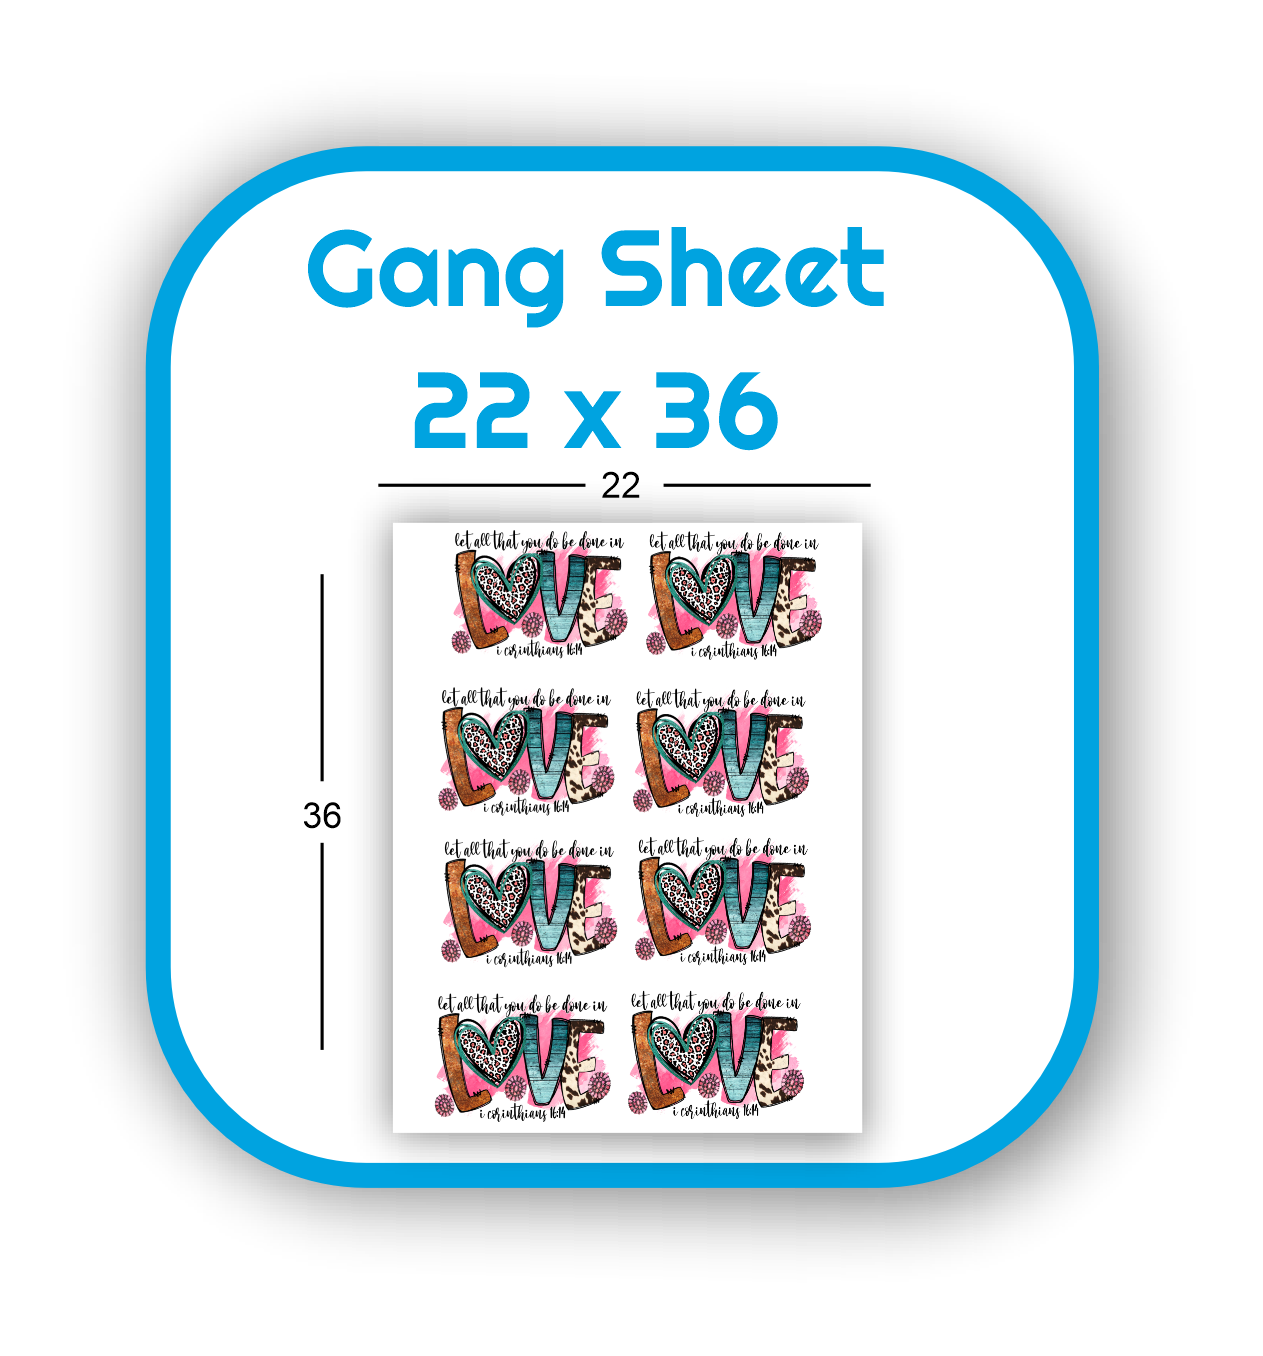 gang-sheet-22x36